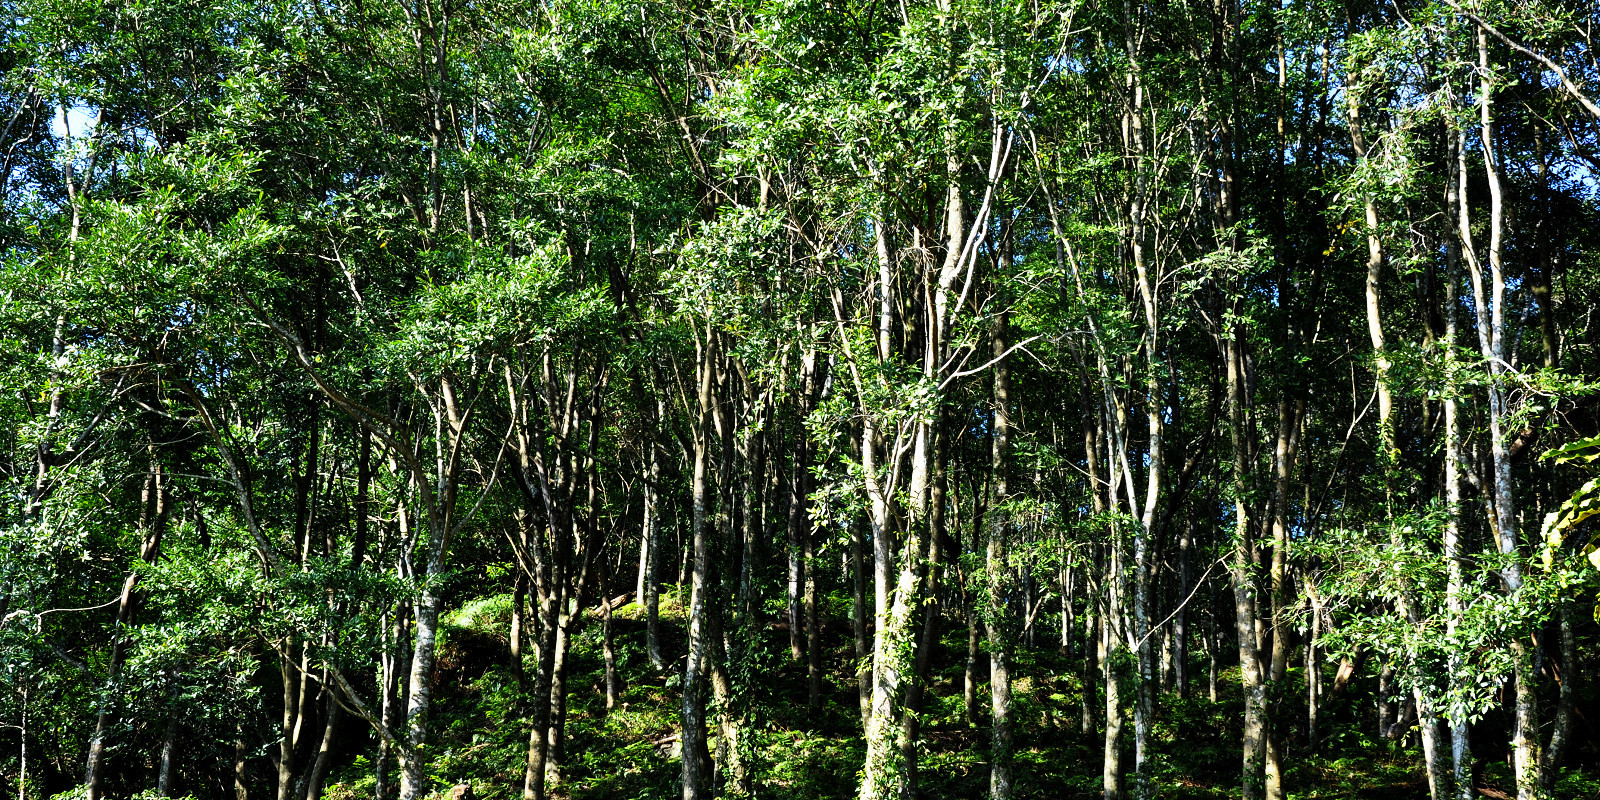 森林暨自然資源學系